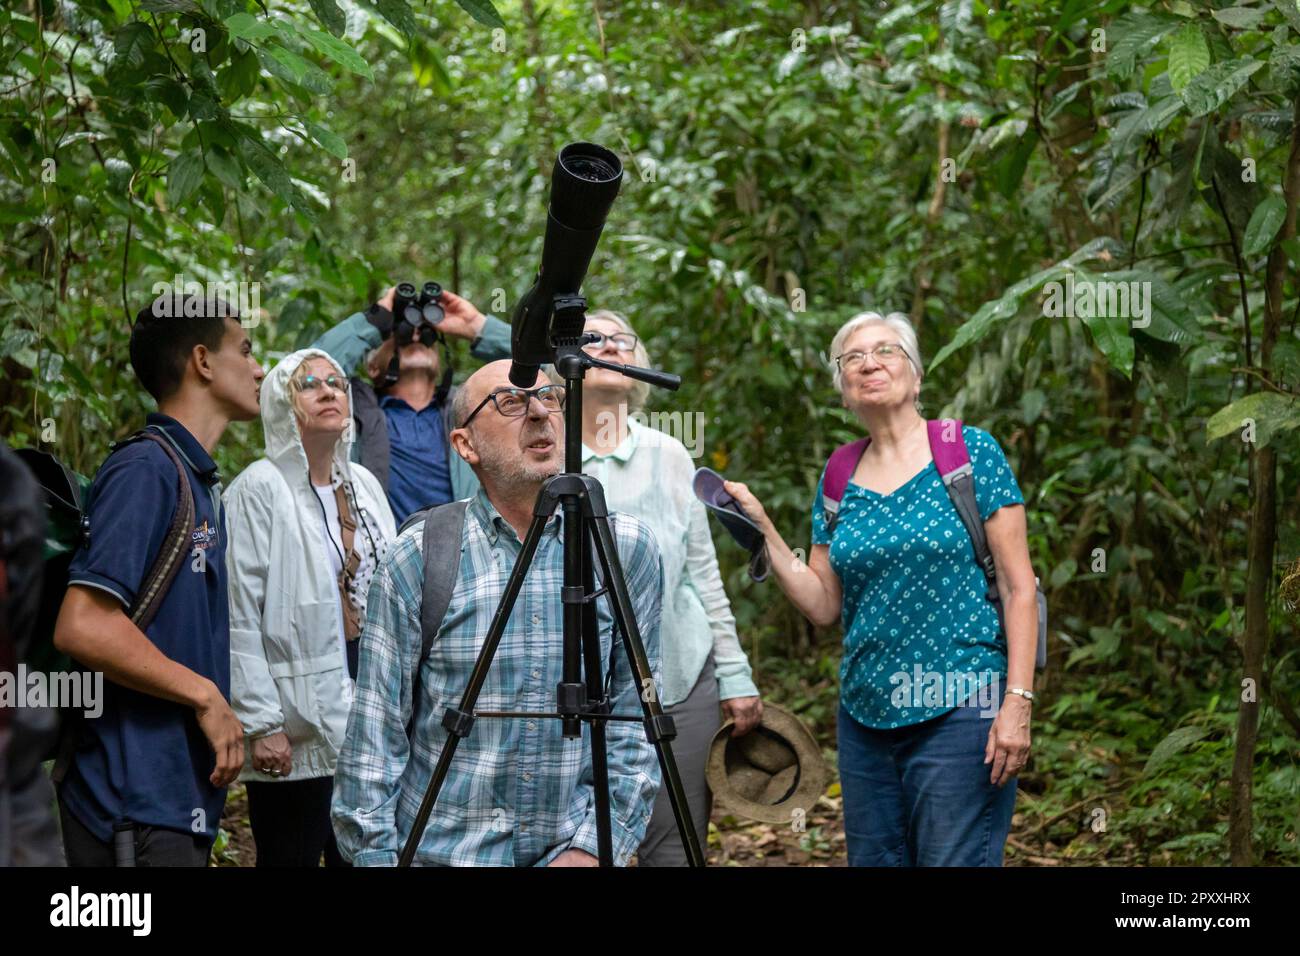 Muelle San Carlos, Costa Rica - i turisti utilizzano un campo di avvistamento e binocoli per vedere la fauna selvatica nella foresta pluviale del Costa Rica. Foto Stock